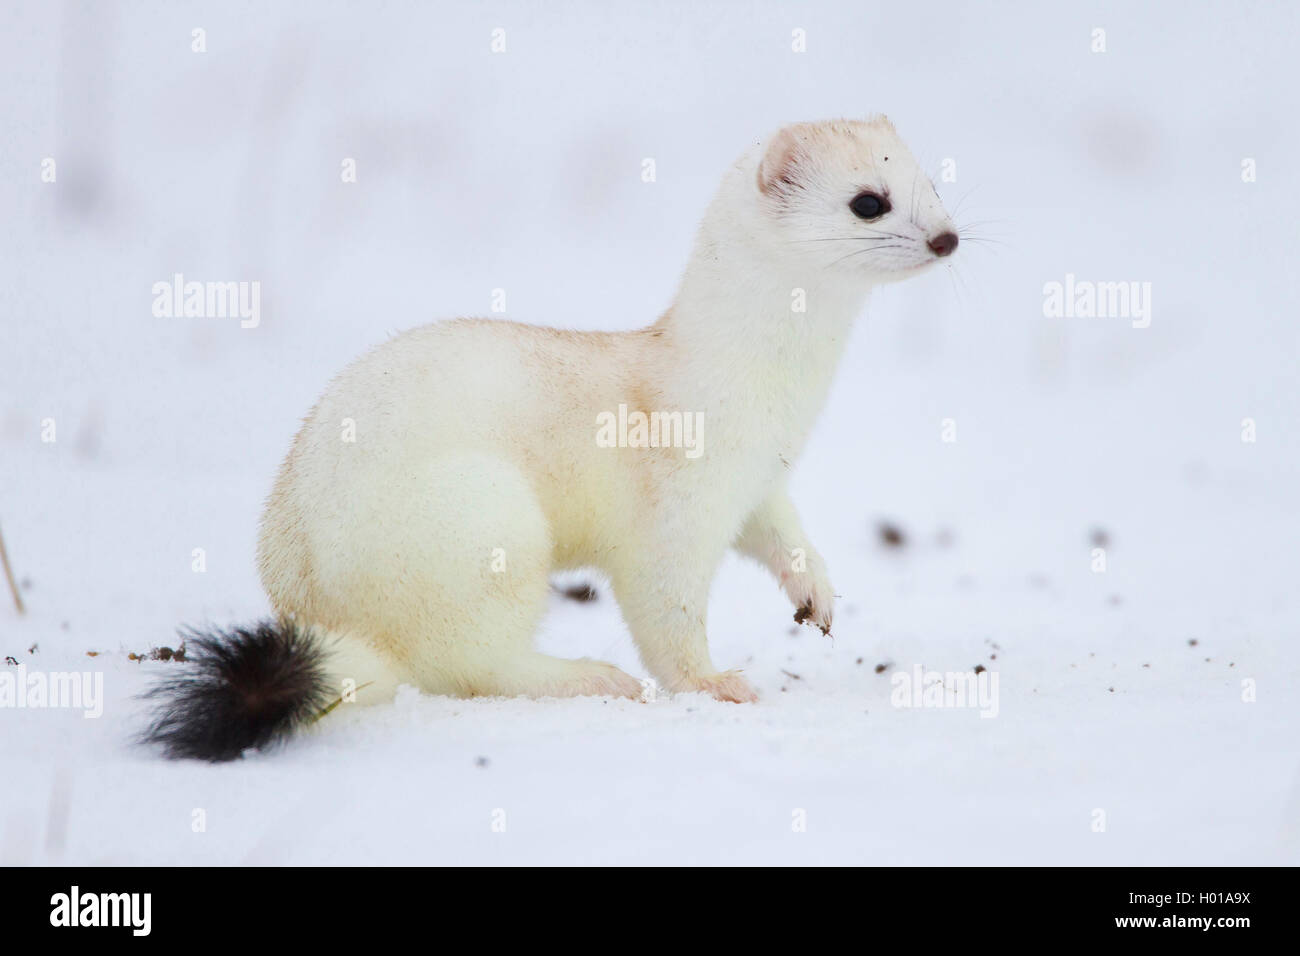 Ermellino, ermellino, corto-tailed donnola (Mustela erminea), in cappotto invernale in un snow-capped prato, vista laterale, Germania Foto Stock